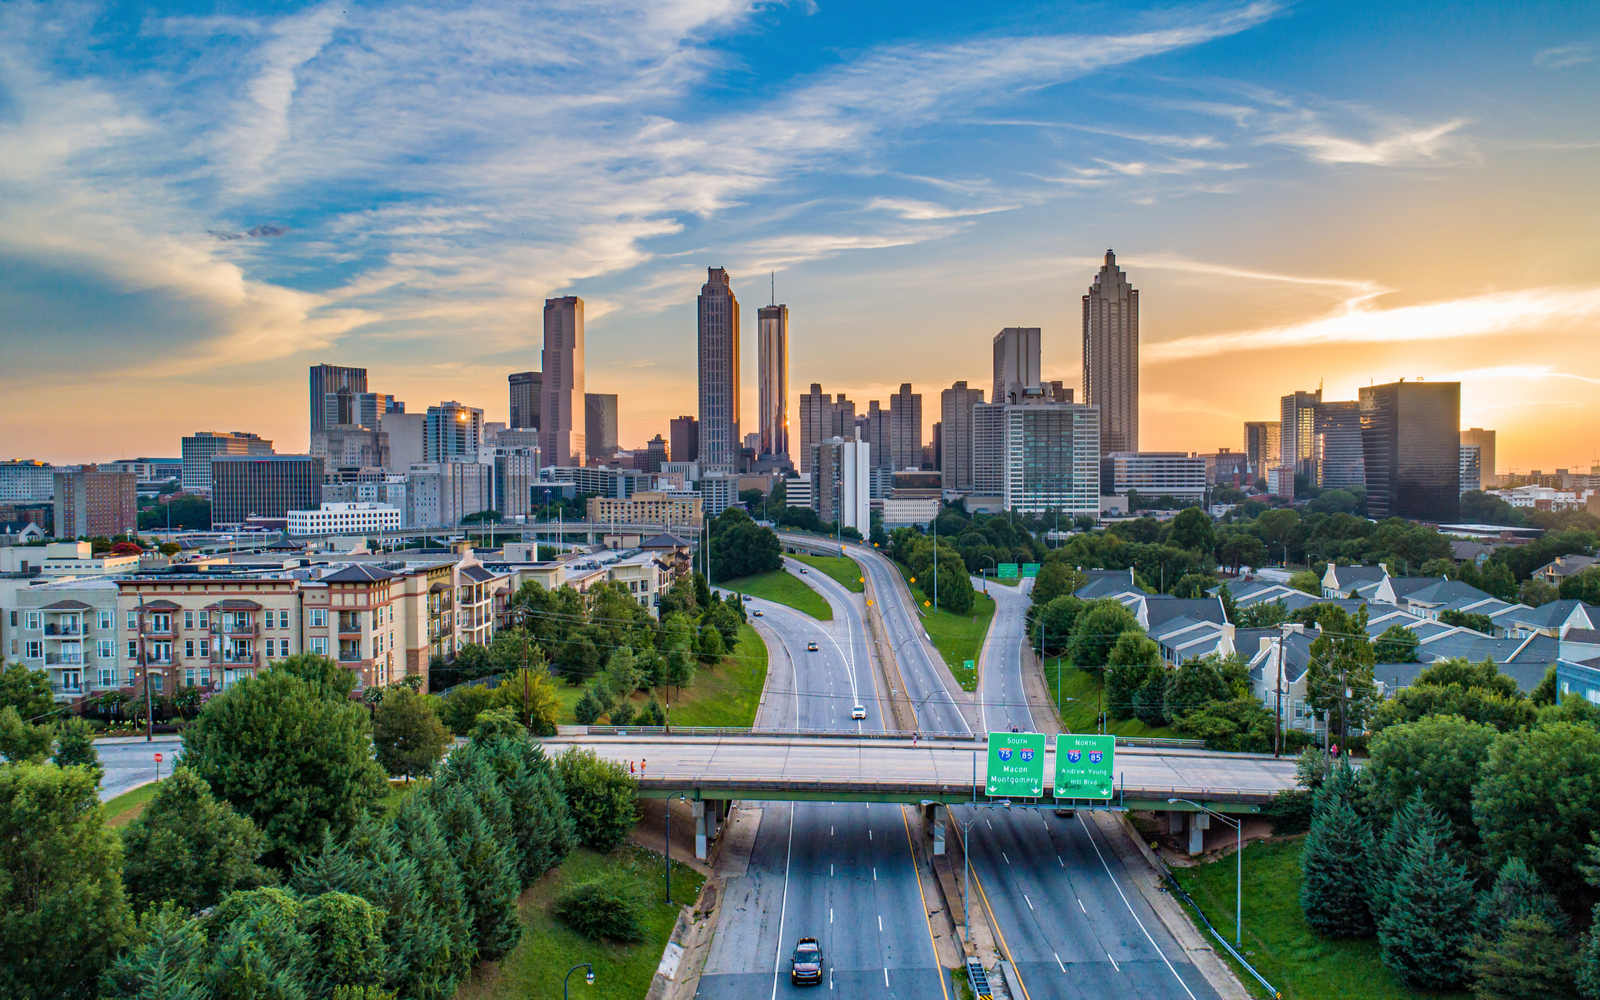 Is Atlanta Safe? | Travel Tips & Safety Concerns